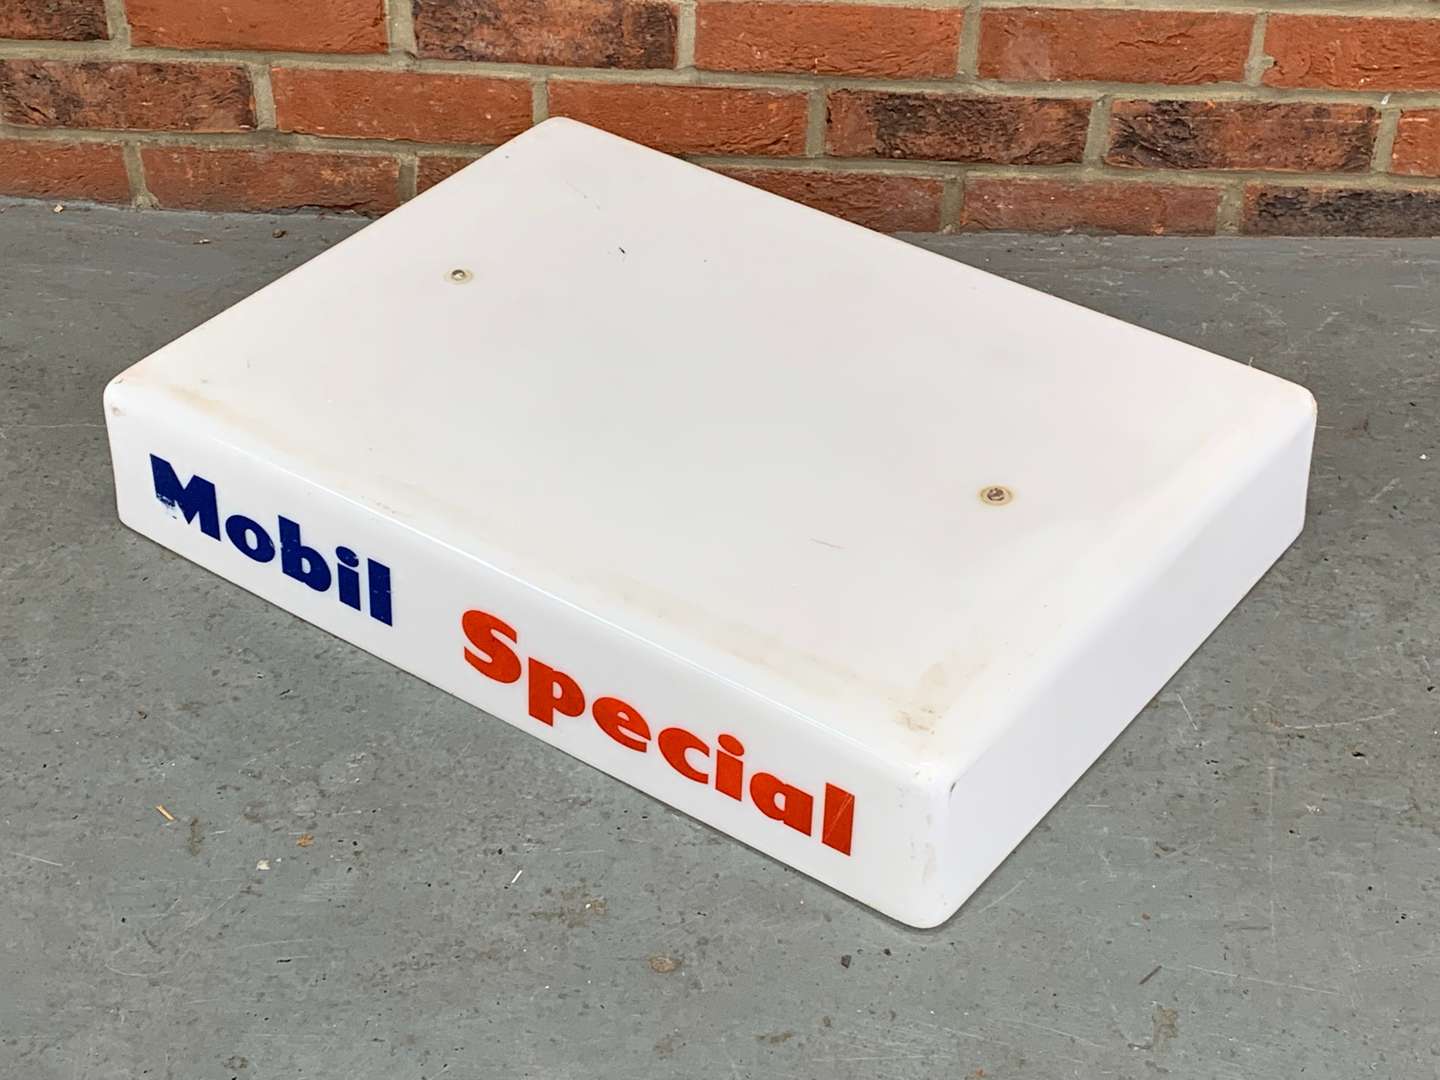 <p>Mobil Special Plastic Petrol Pump Top a/f</p>